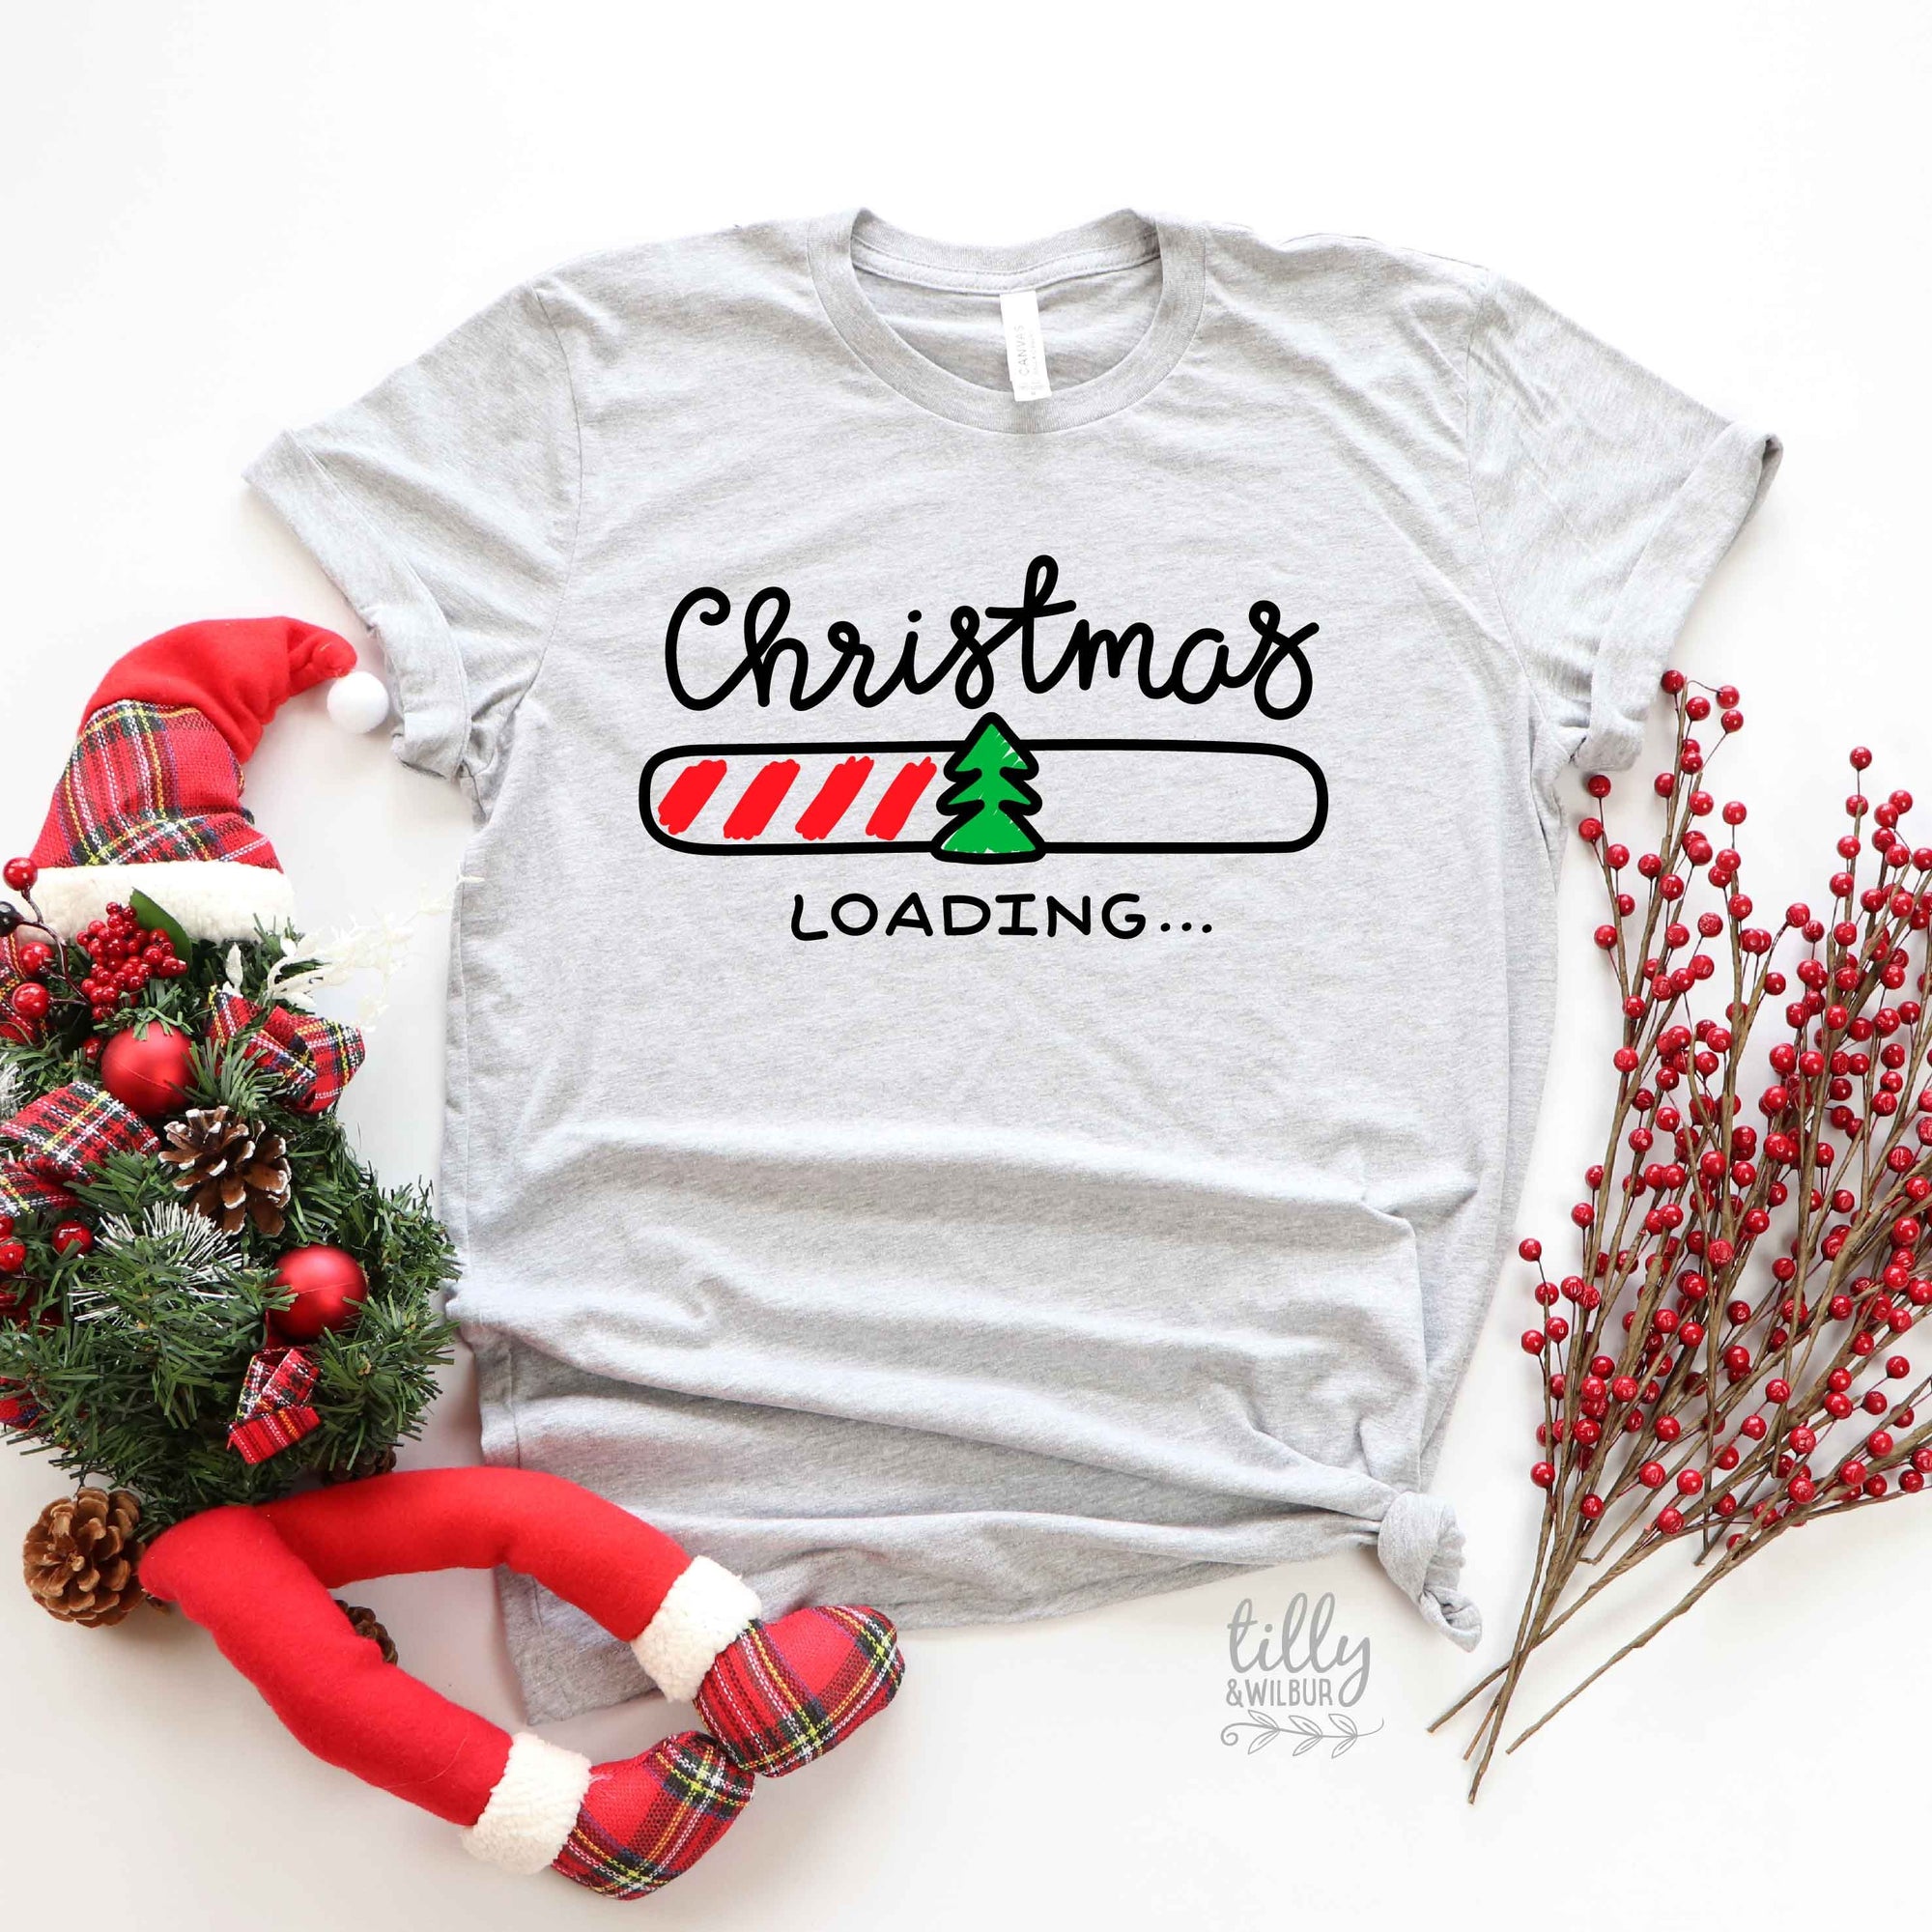 Christmas Loading T-Shirt, Funny Christmas T-Shirt, Funny Christmas Gift, Matching Family Christmas T-Shirts, Matching Christmas T-Shirts